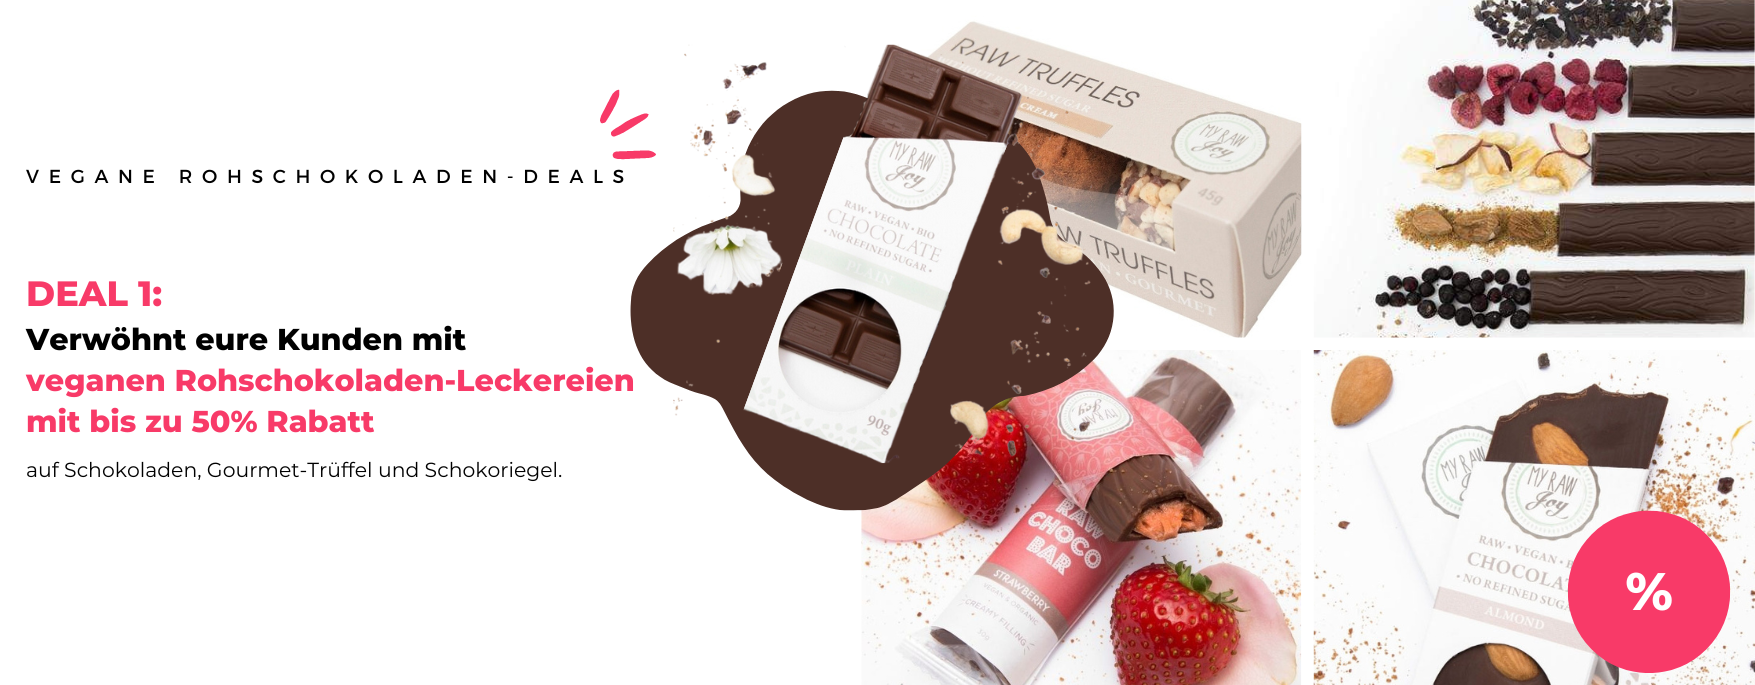 DE Vegan Raw Chocolate Deals 1